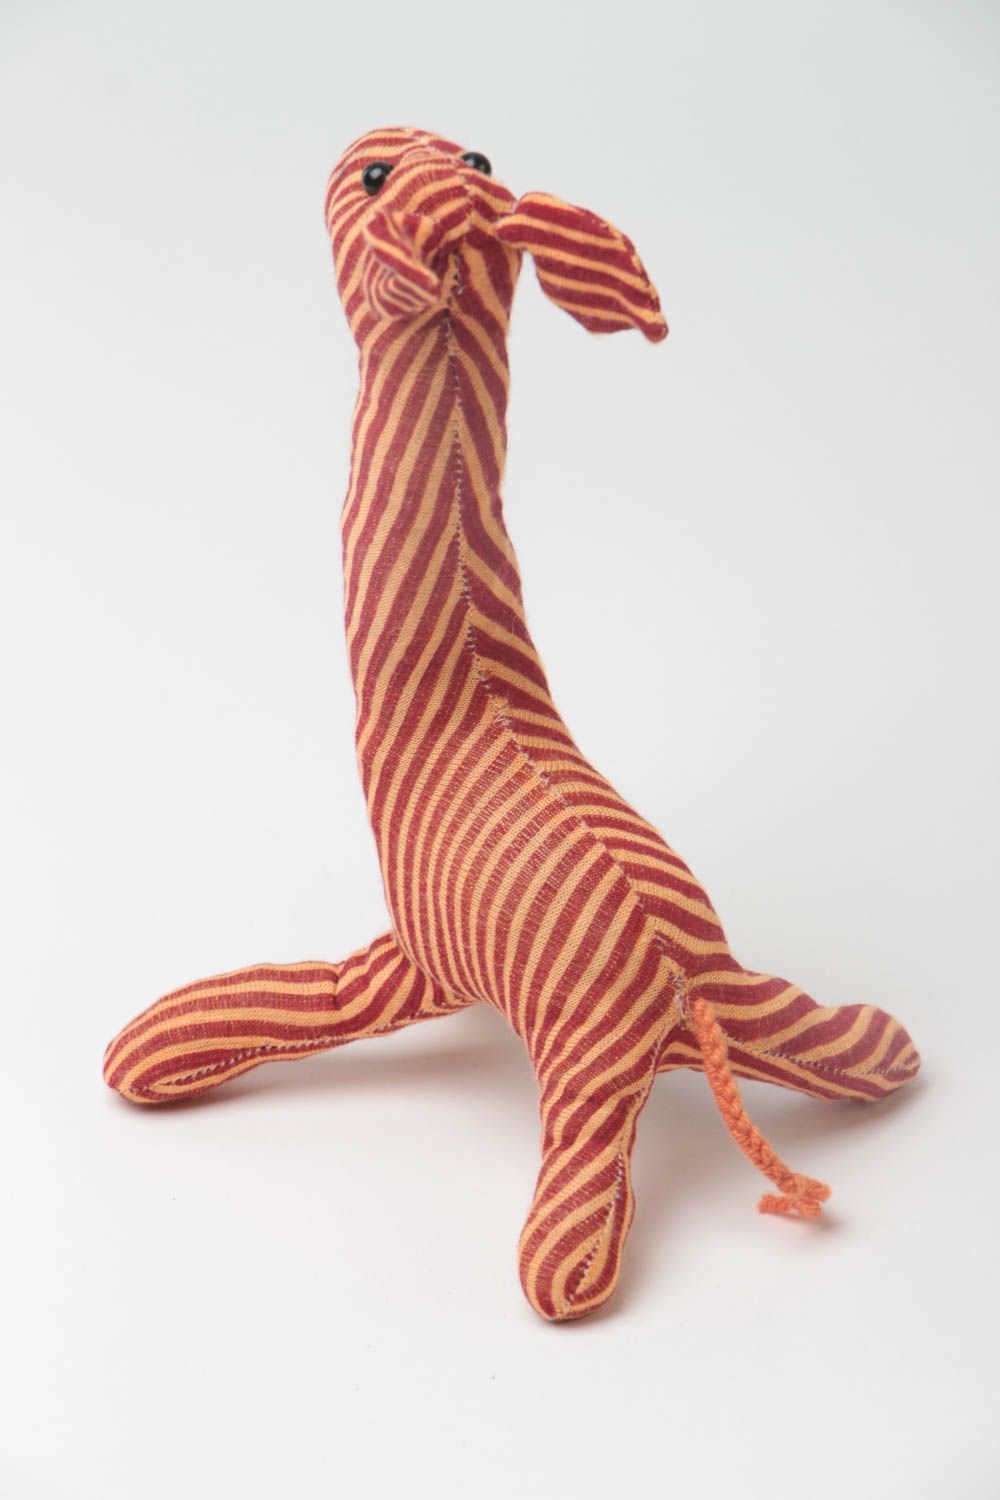 Juguete de tela artesanal para niños cosido a mano con forma de jirafa foto 4